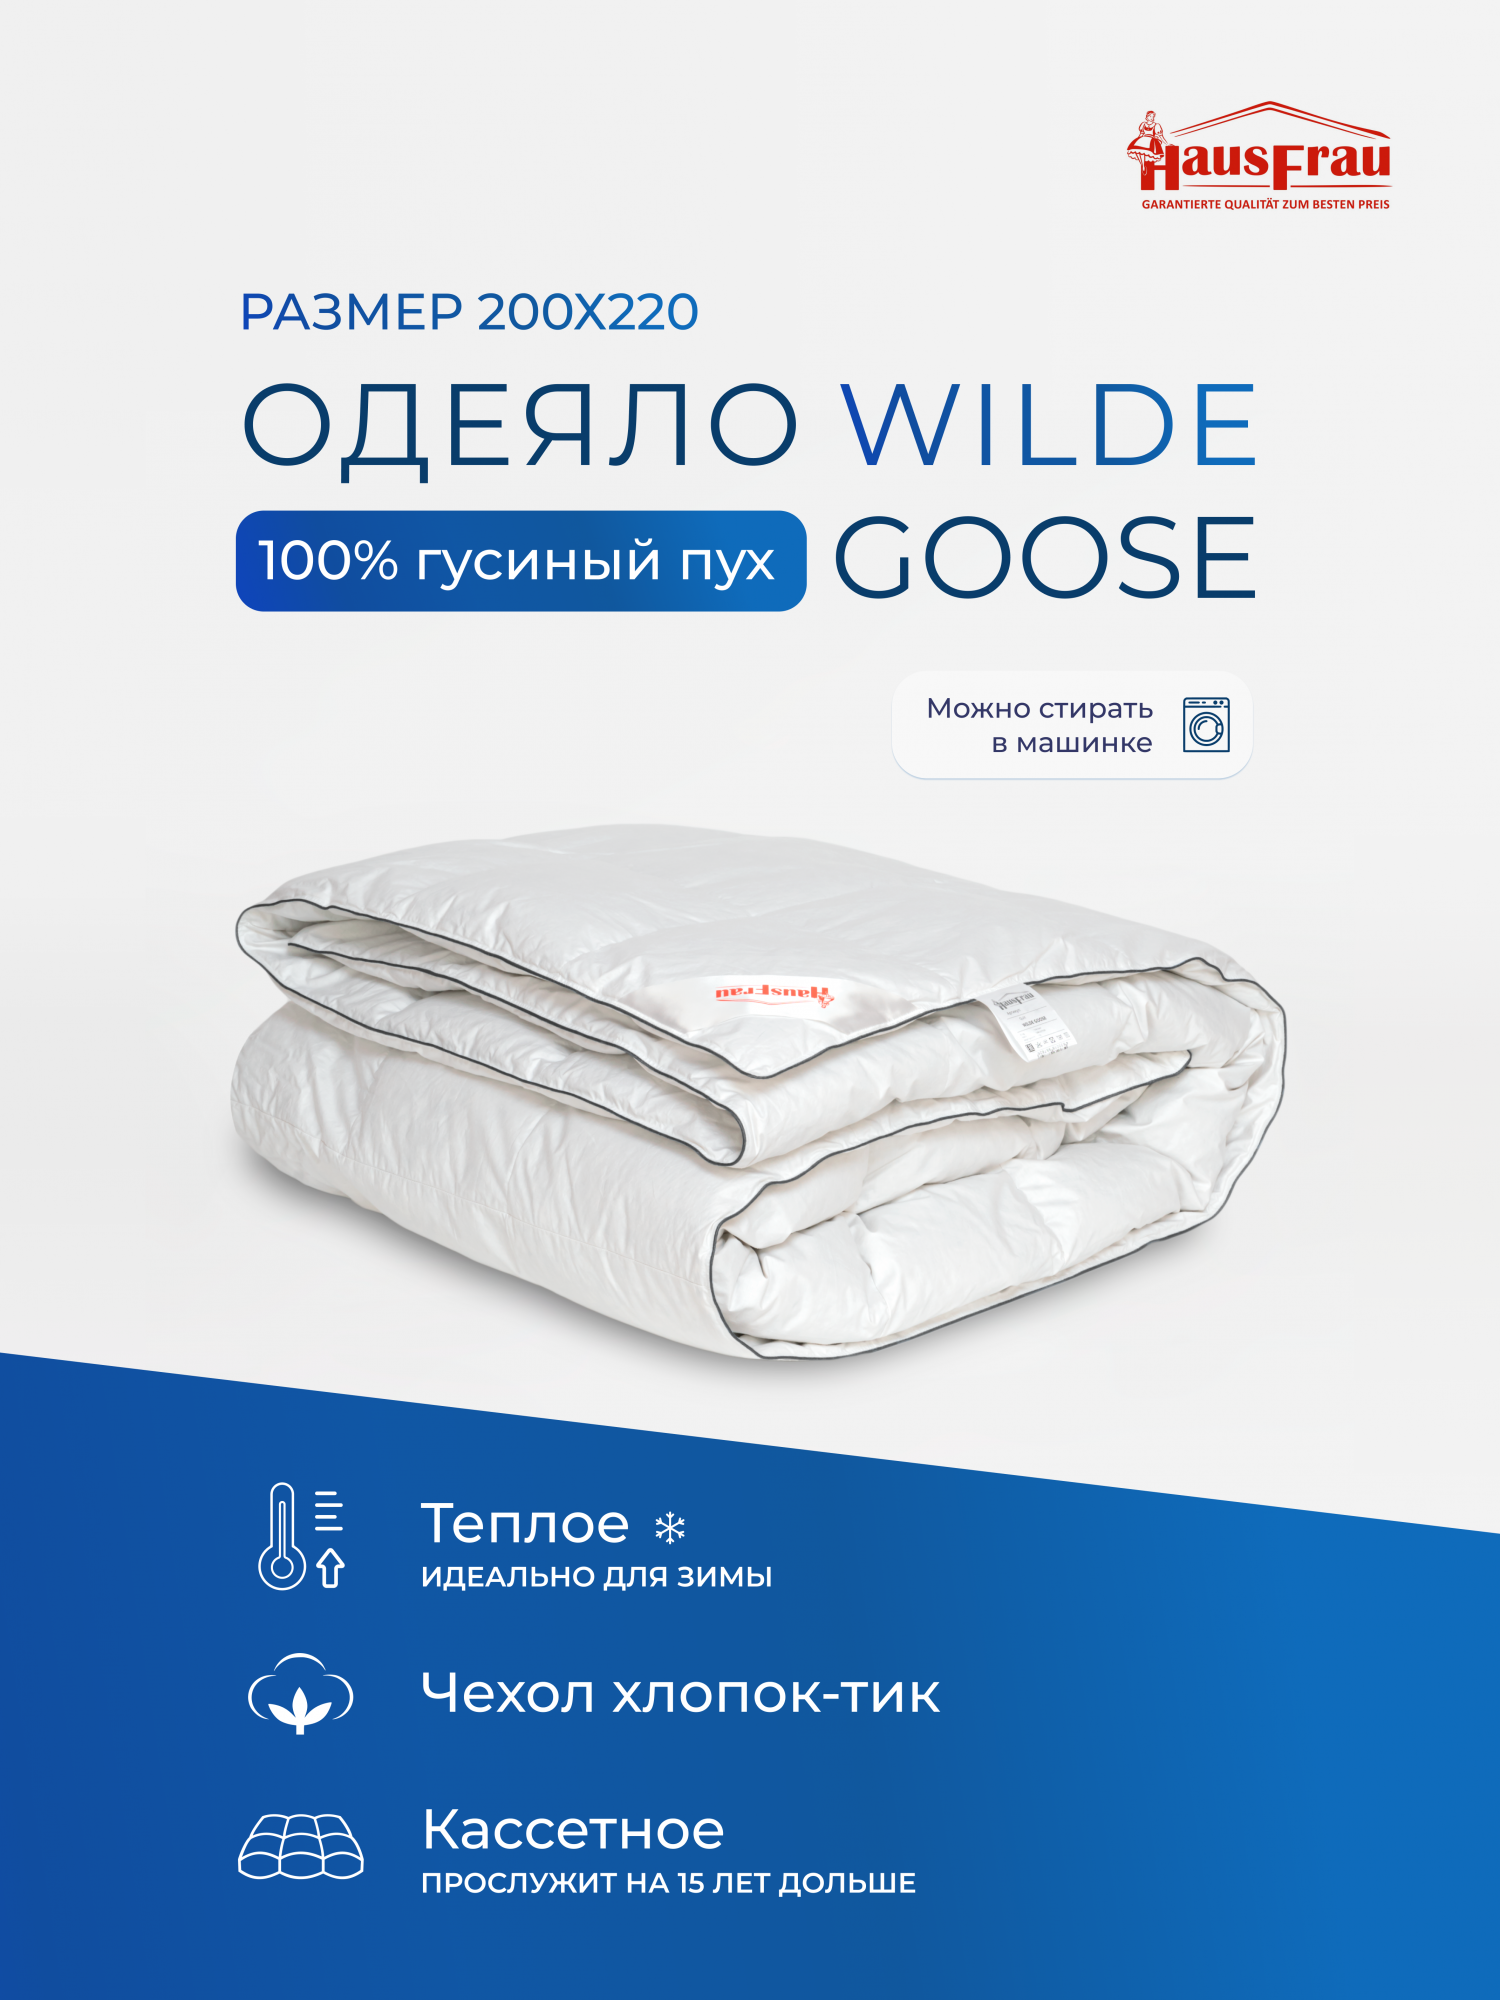 Одеяло HausFrau Wilde Goose кассетное пуховое теплое 200х220